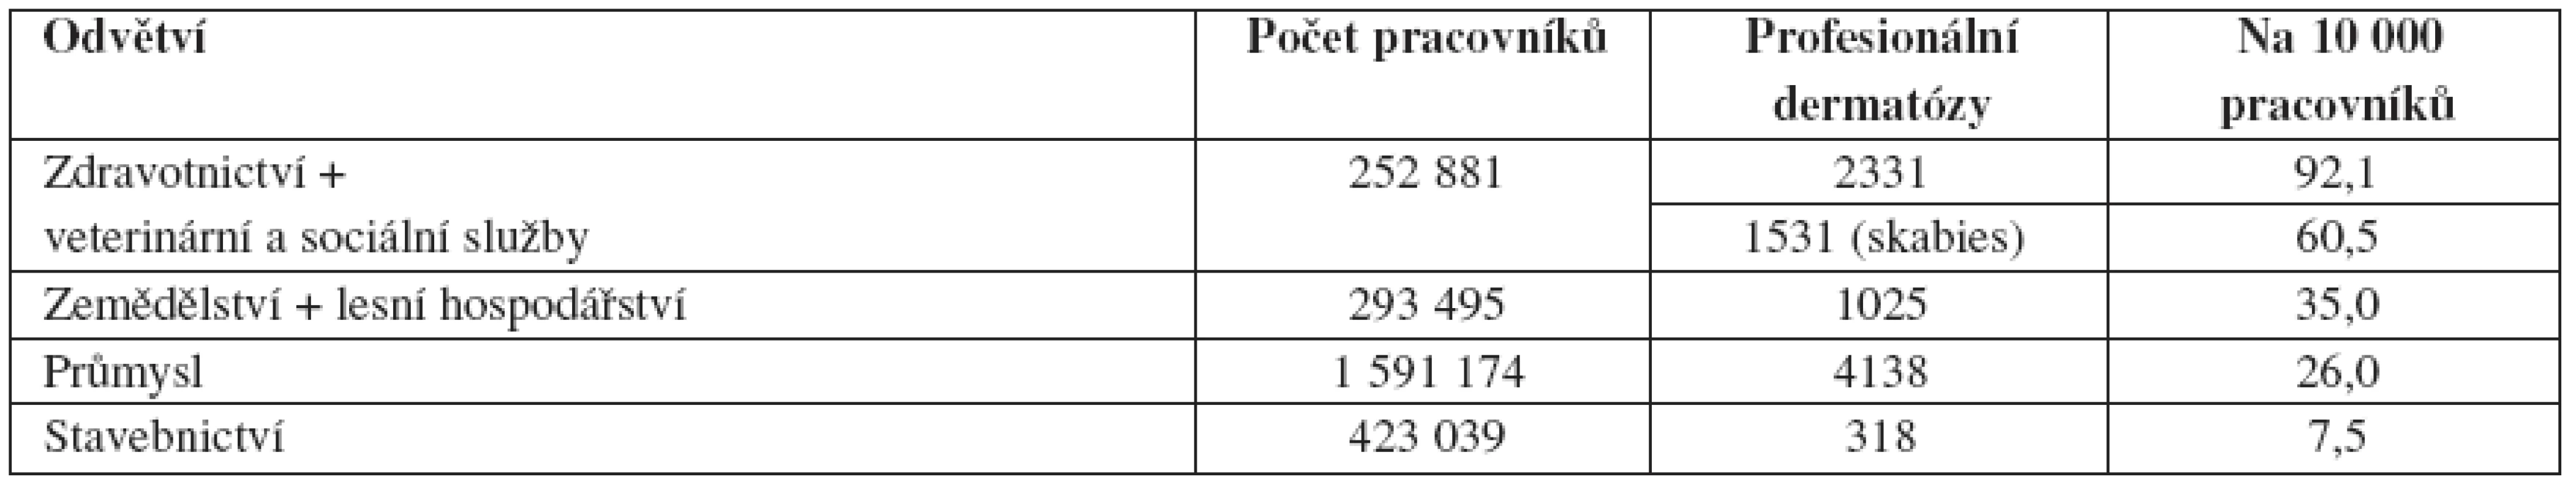 Profesionální dermatózy v ČR podle výrobních odvětví na 10 000 pracovníků (1992–2007)